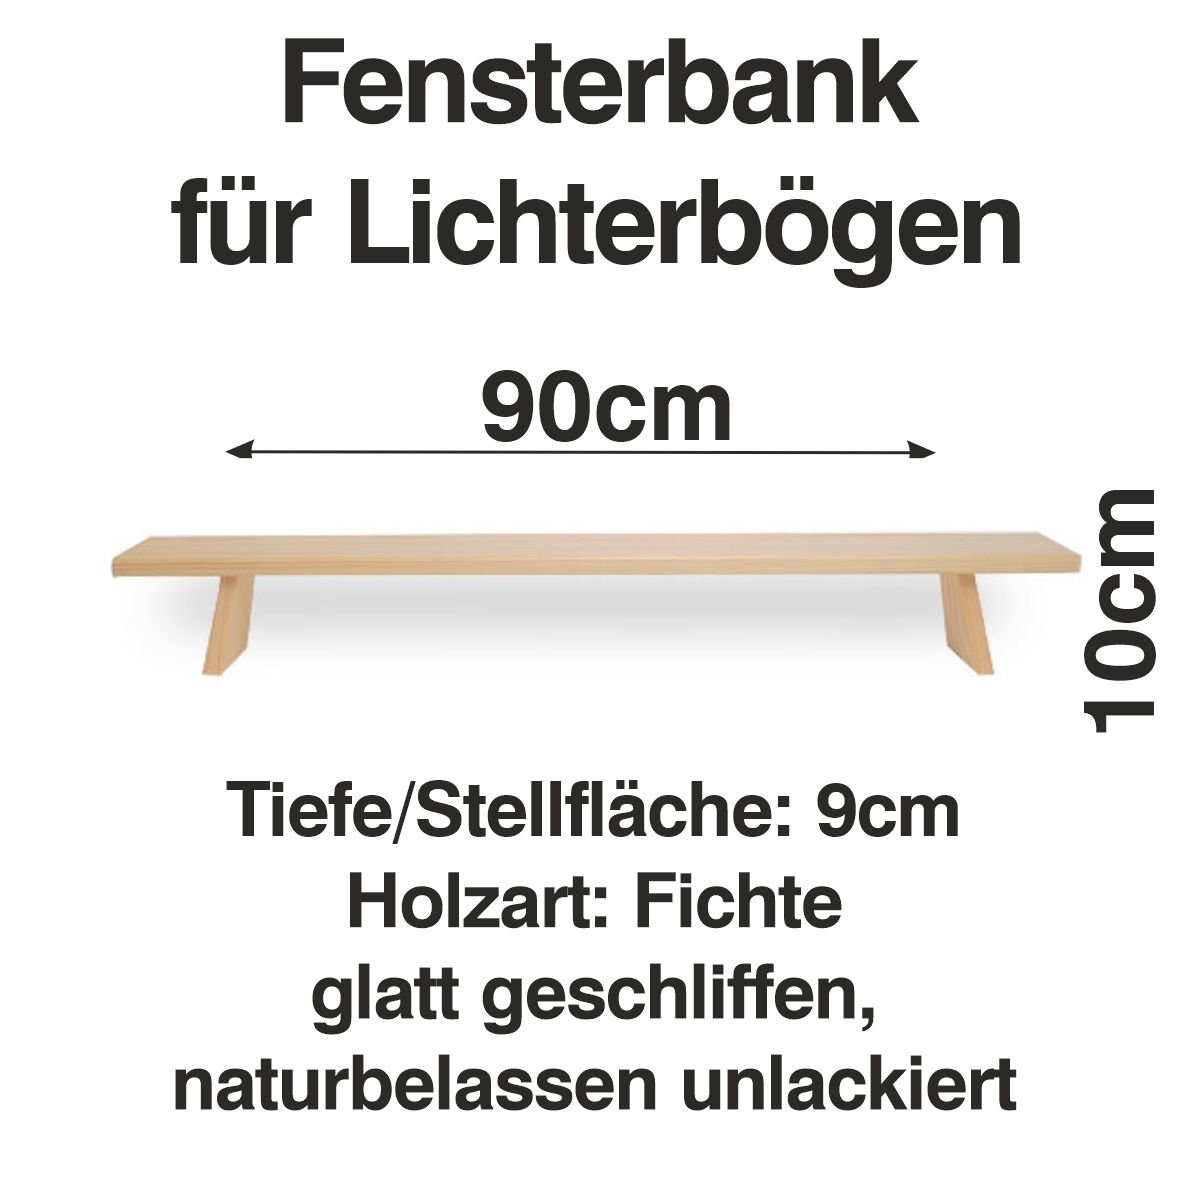 90 cm Fenst Schwibbogen Bank Schenk Holzkunst Lichterbogen Erhöhung Schwibbogen-Fensterbank